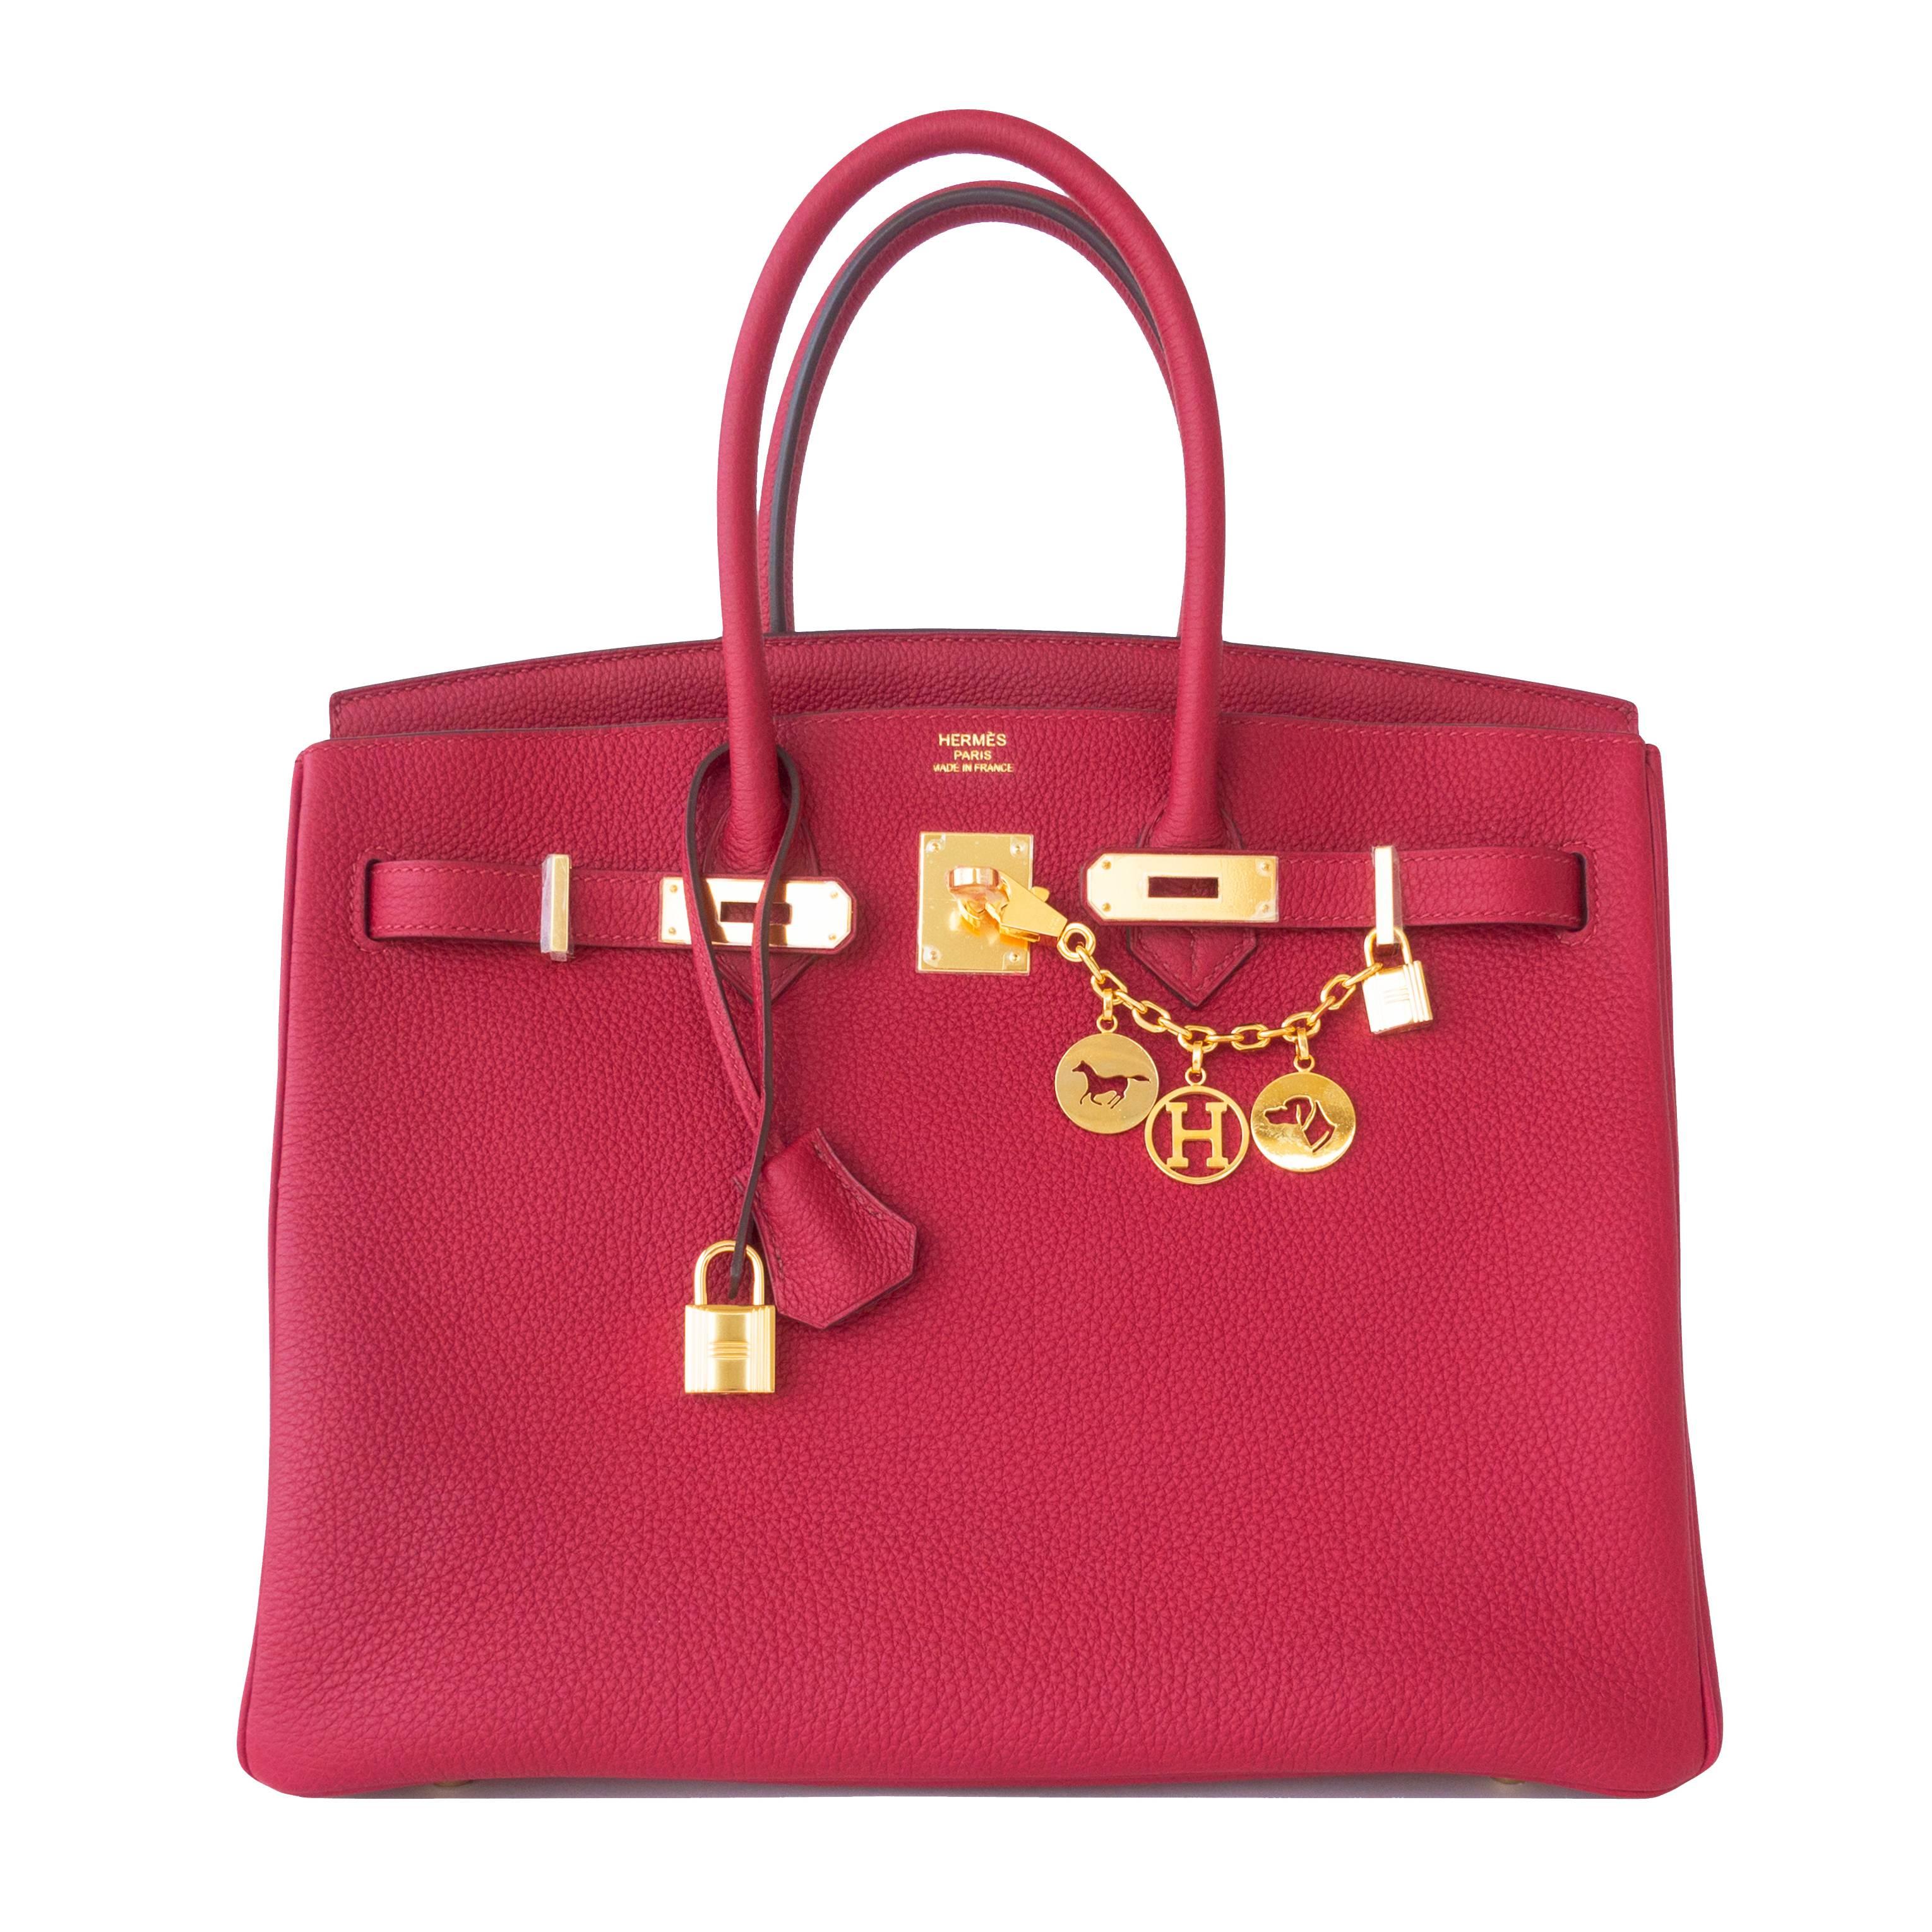 Hermes Rouge Grenat Togo Garnet Red 35cm Birkin Bag Gold Hardware GHW Exquisite 3